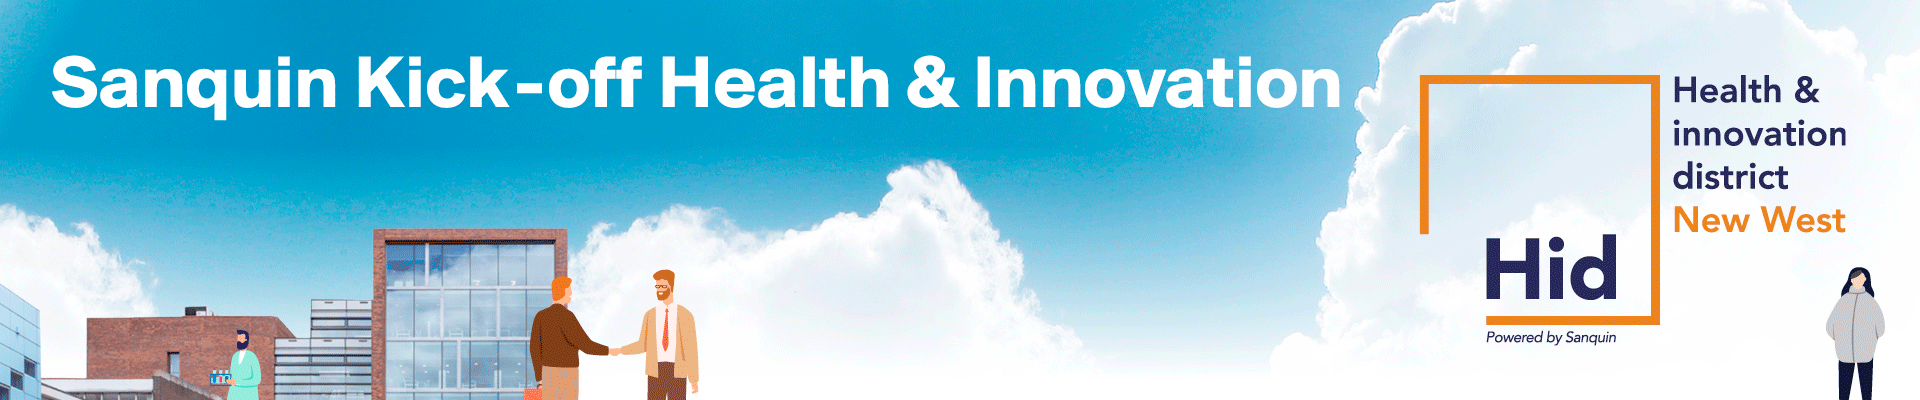 Sanquin Kick-off Health & Innovation